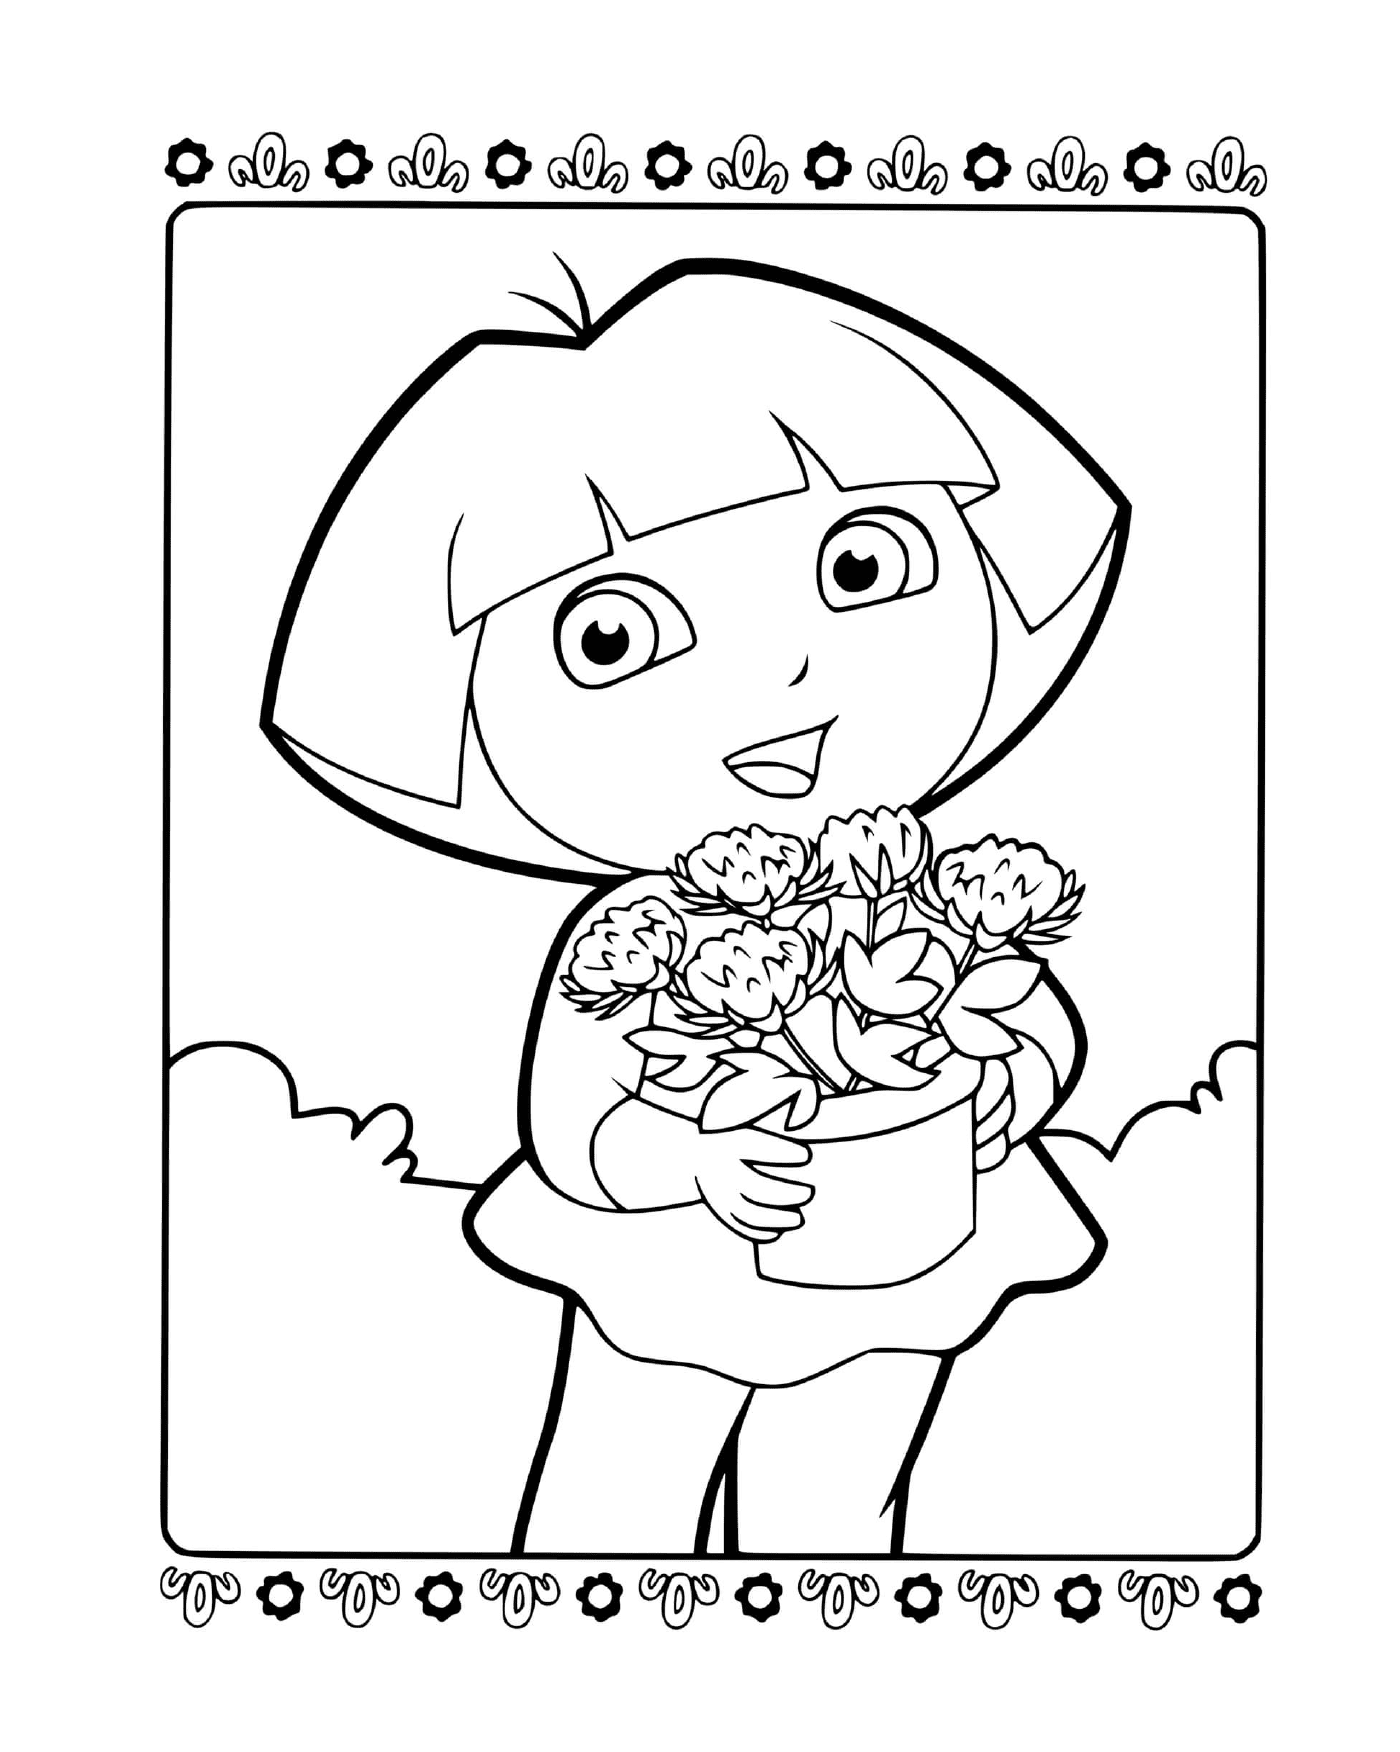  Dora se entrega a su jardinería favorita 